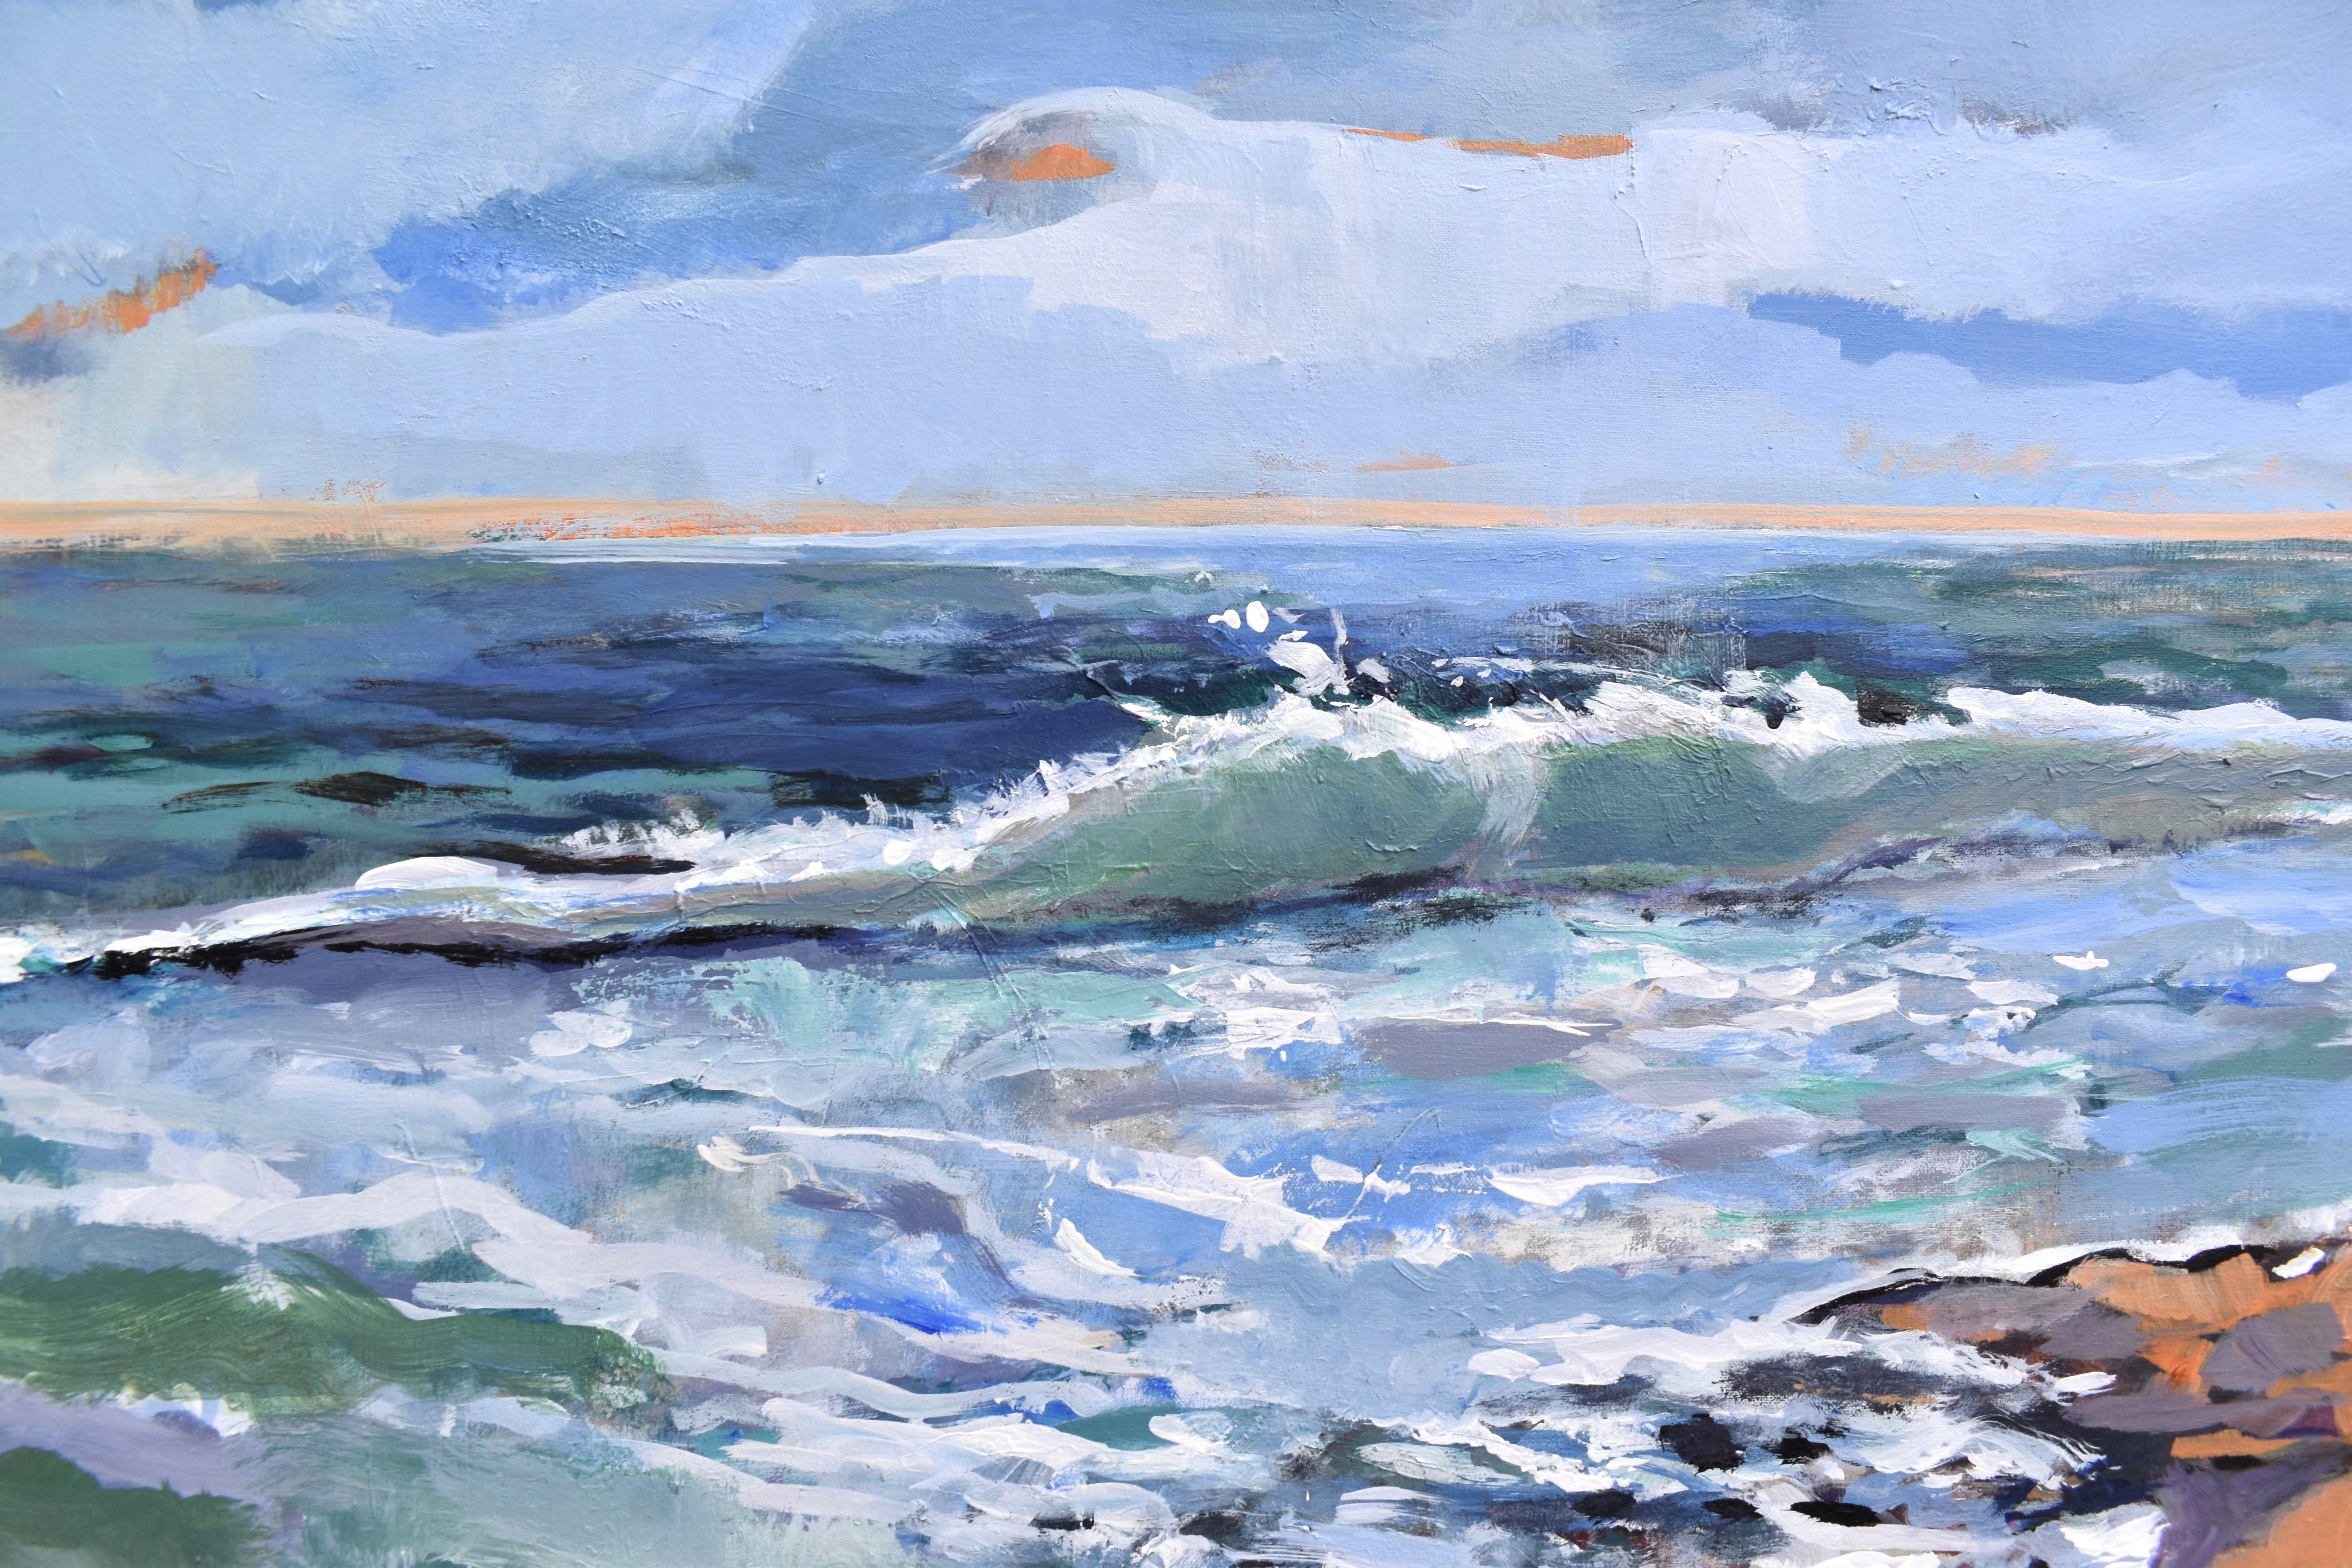 <p>Commentaires de l'artisteLes vagues s'écrasent sur la plage de Blowing Rock, laissant sur leur passage des traces d'écume de mer.<br> Les coups de pinceau audacieux imitent la puissance implacable et la nature énergique de la mer. Émerveillée par